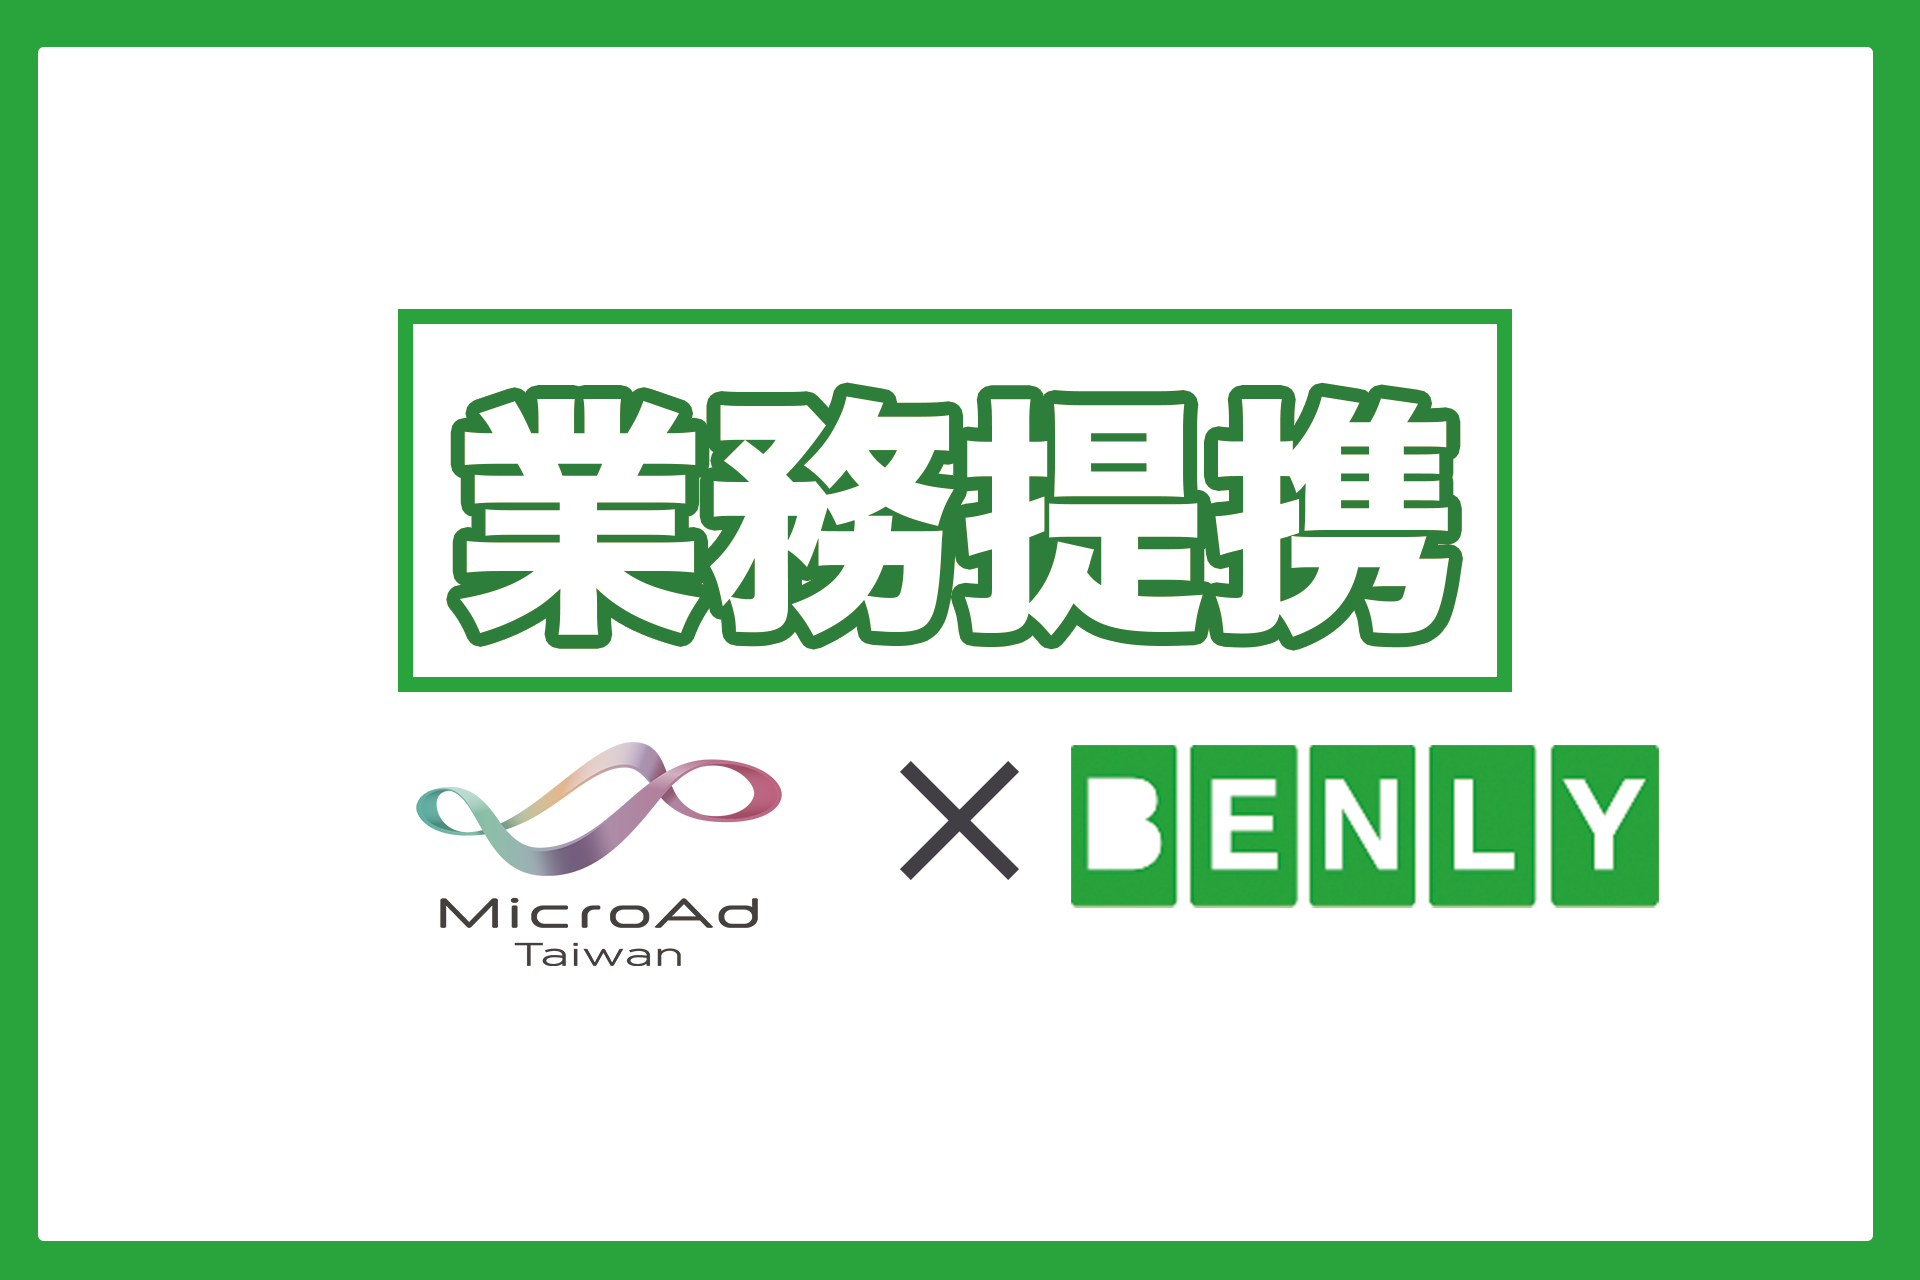 台湾最大級の親日メディア「Japaholic」を運営するMicroAd Taiwan,Ltdと業務提携を開始しました。